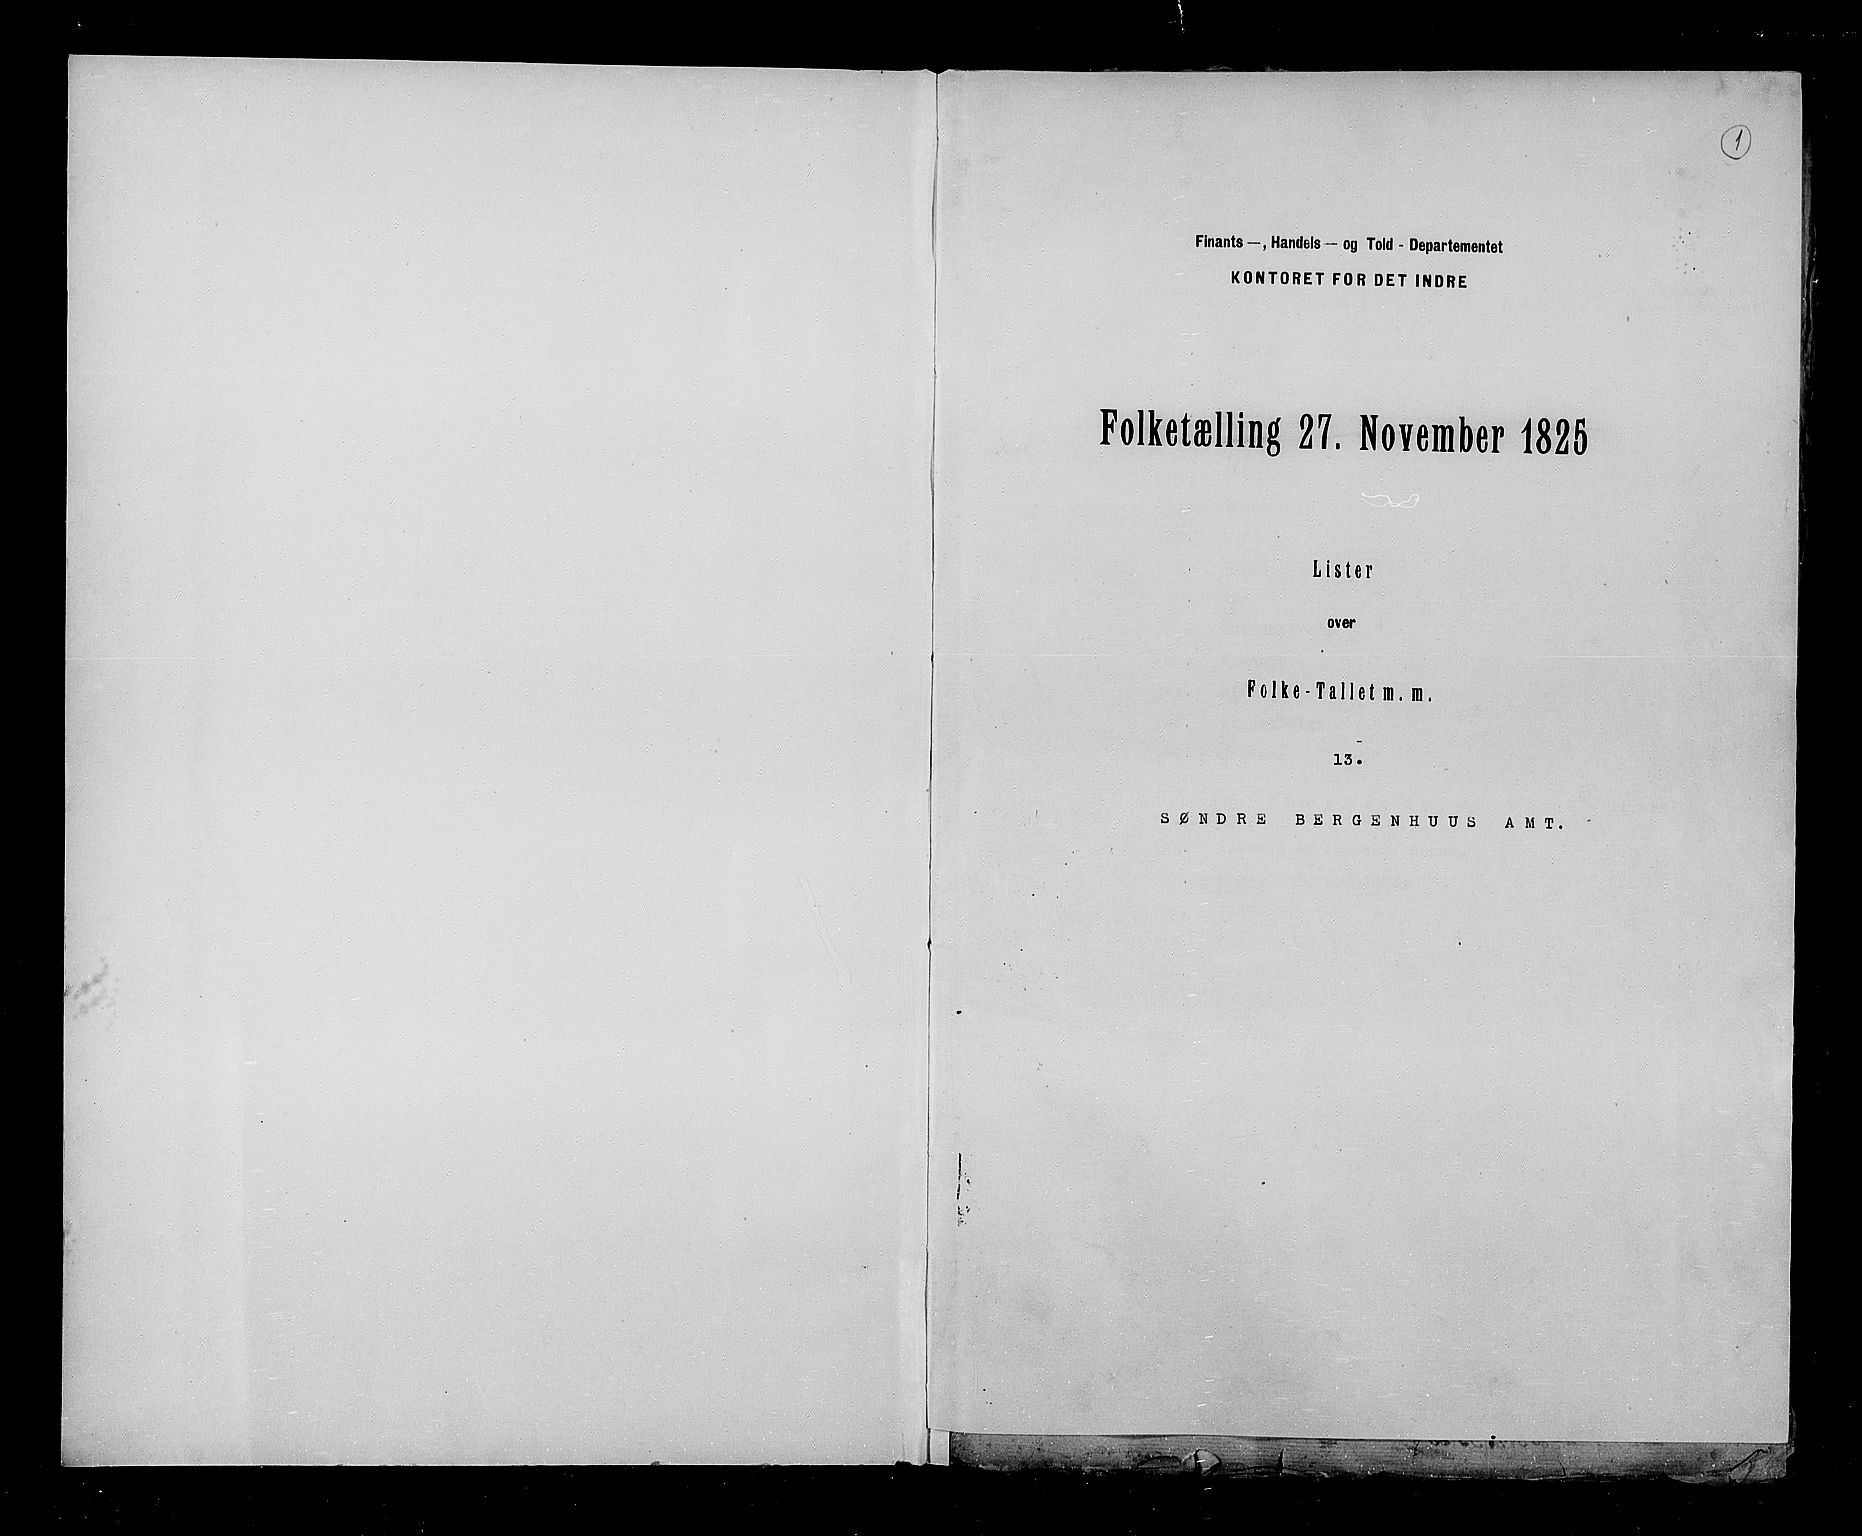 RA, Census 1825, vol. 13: Søndre Bergenhus amt, 1825, p. 1